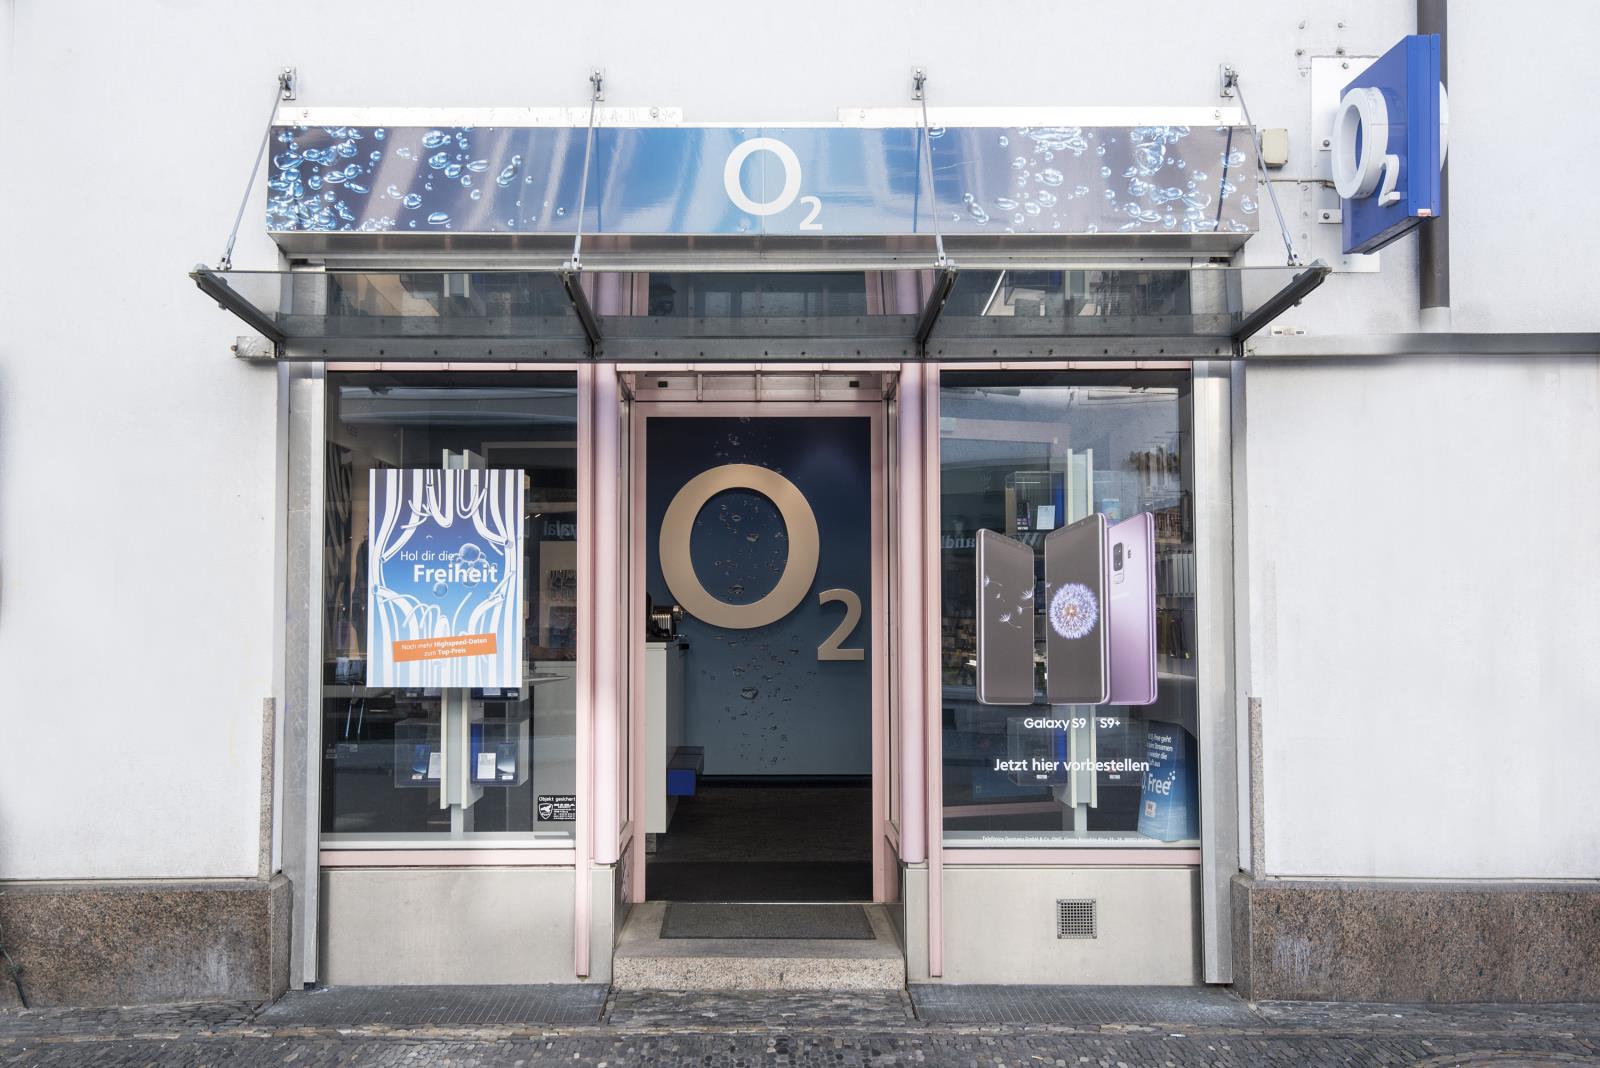 o2 Shop, Merianstr. 1 in Freiburg im Breisgau